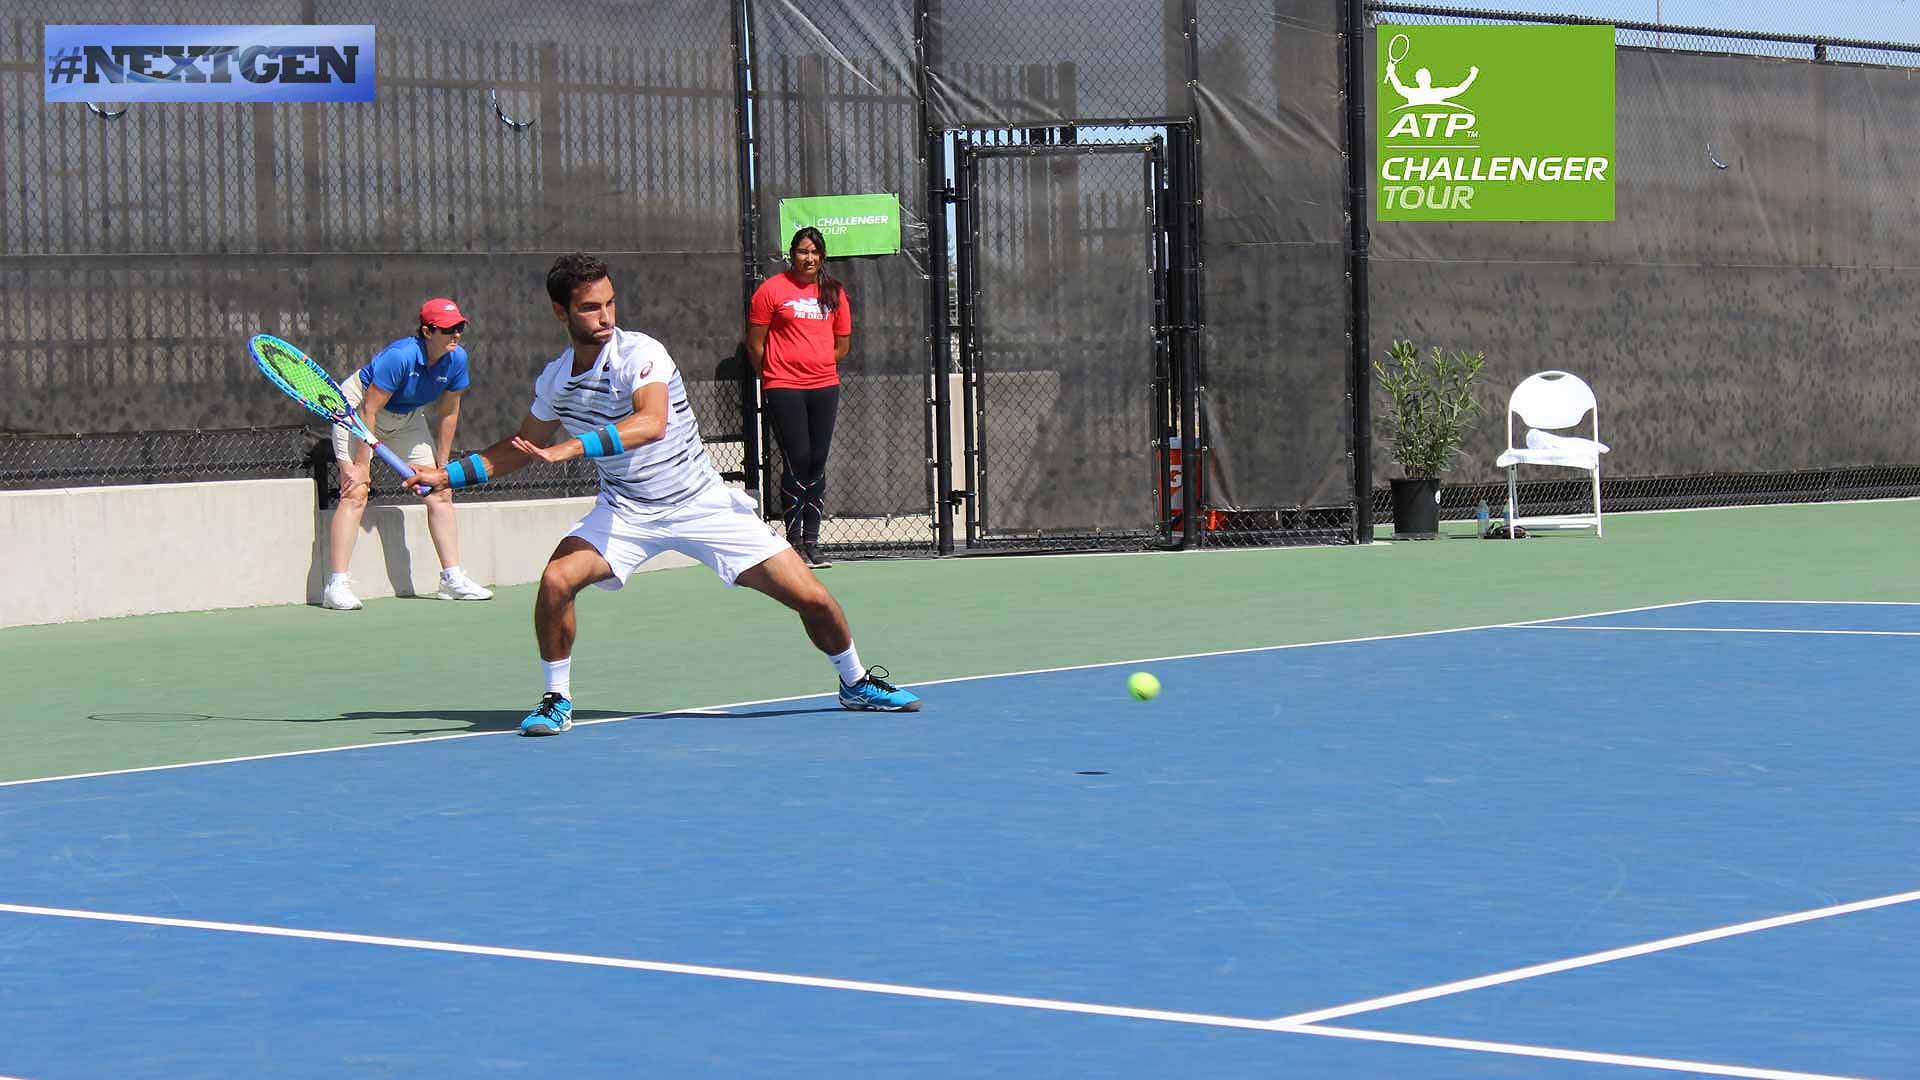 La estrella NextGen Noah Rubin está saludable y jugando su mejor tenis en el torneo ATP Challenger Tour en Stockton.